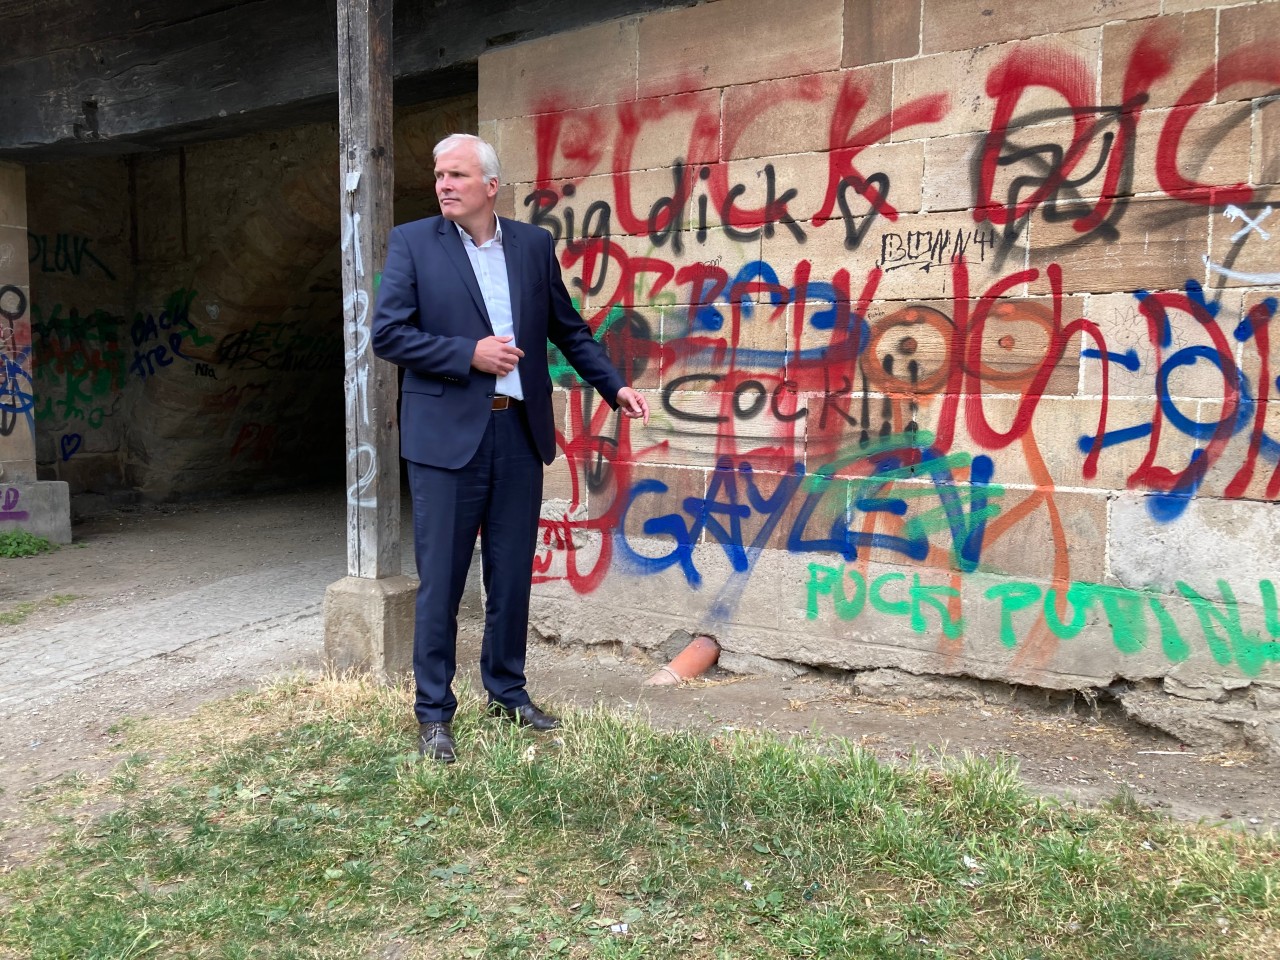 Oberbürgermeister Andreas Bausewein erwägt drastische Maßnahmen wegen der Graffiti an der Krämerbrücke in Erfurt.